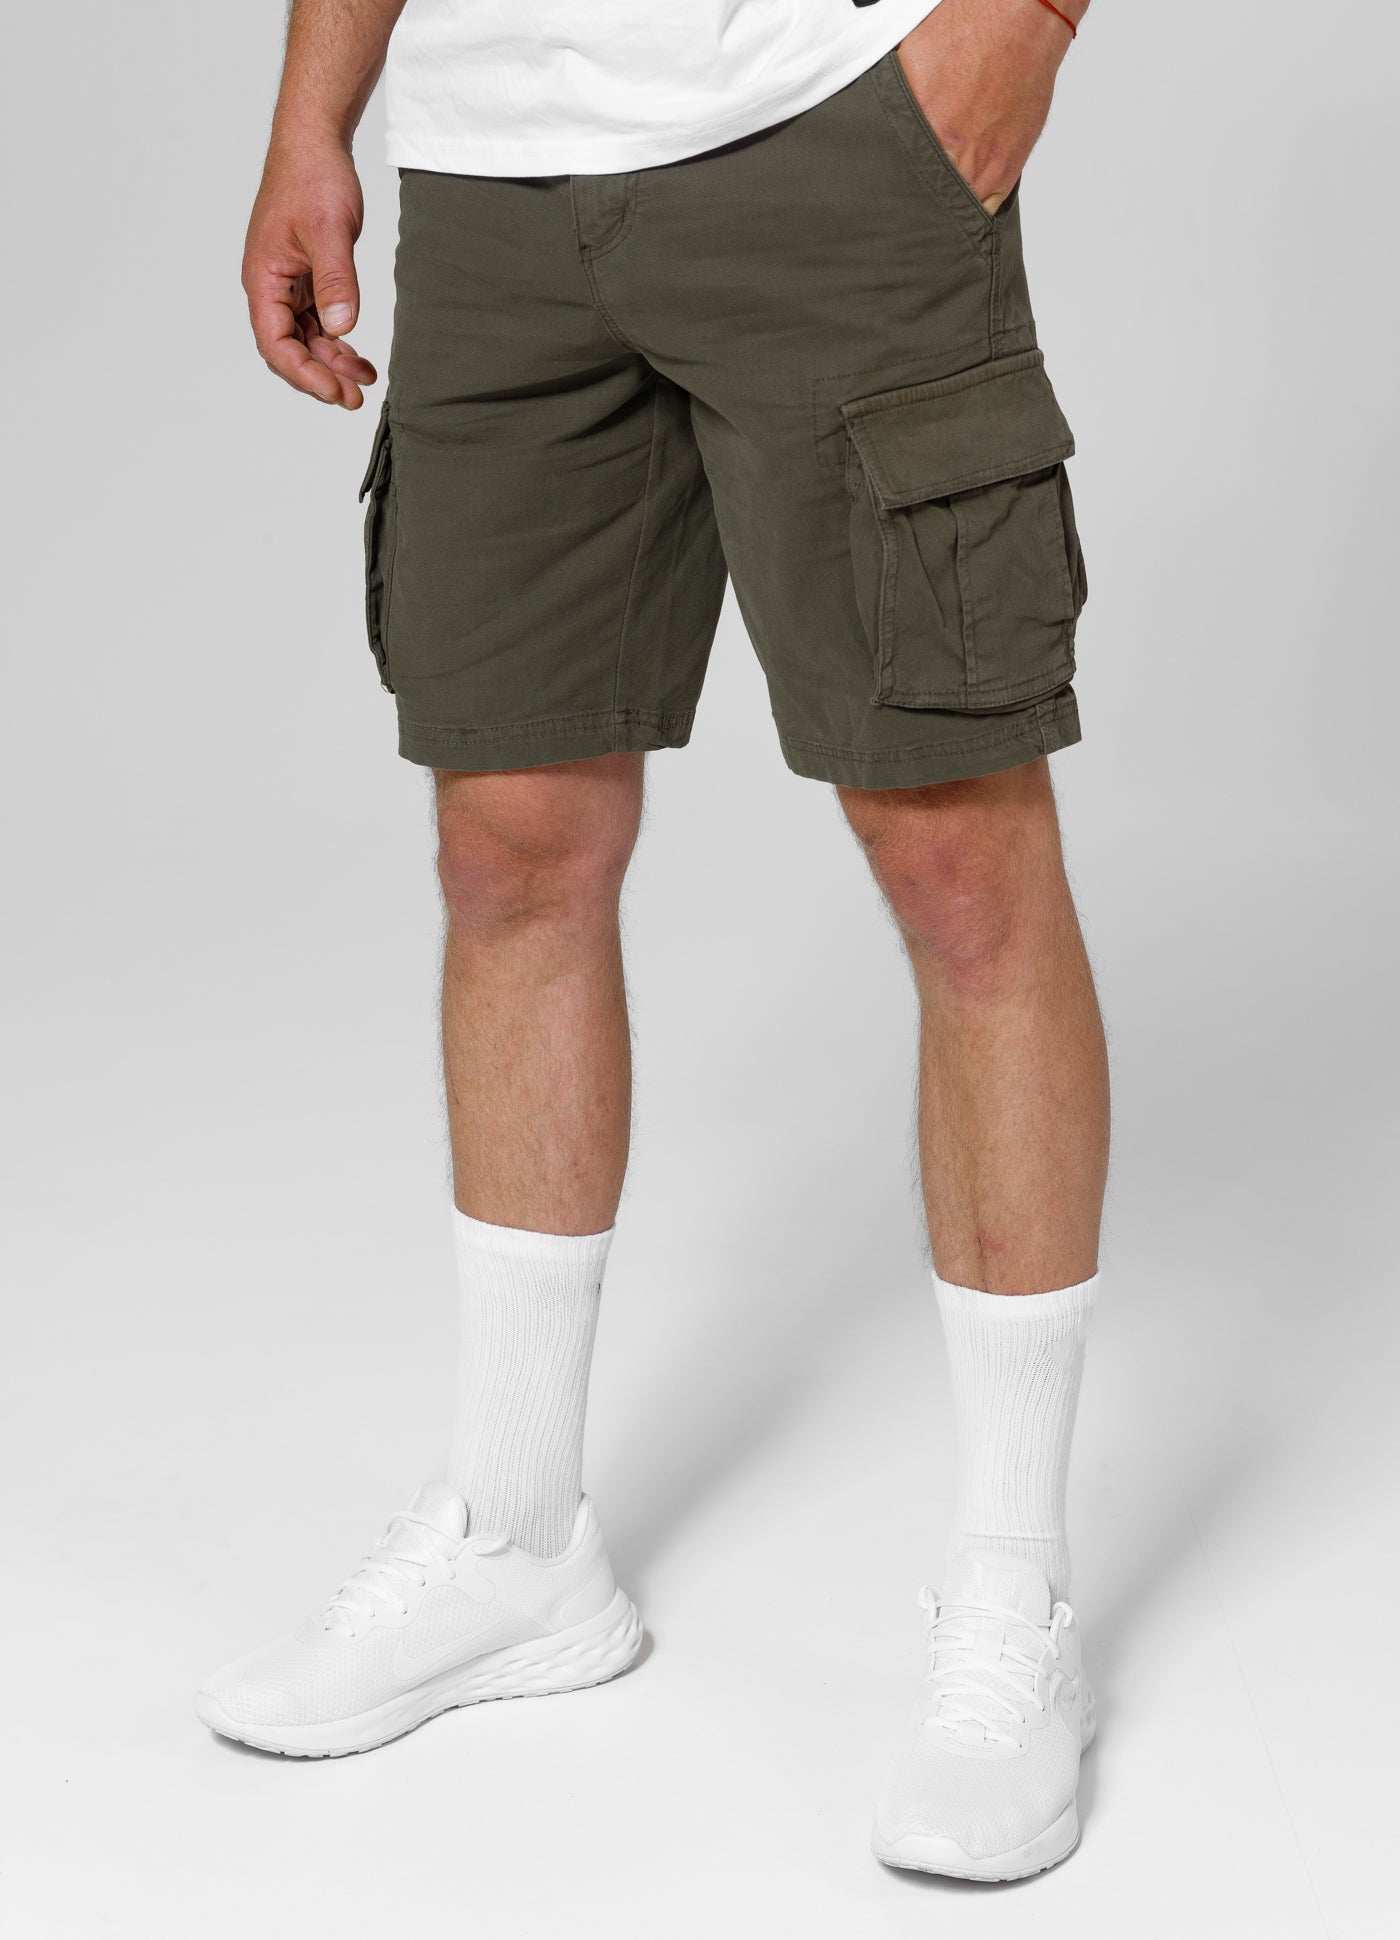 JACKAL Olive Cargo Shorts